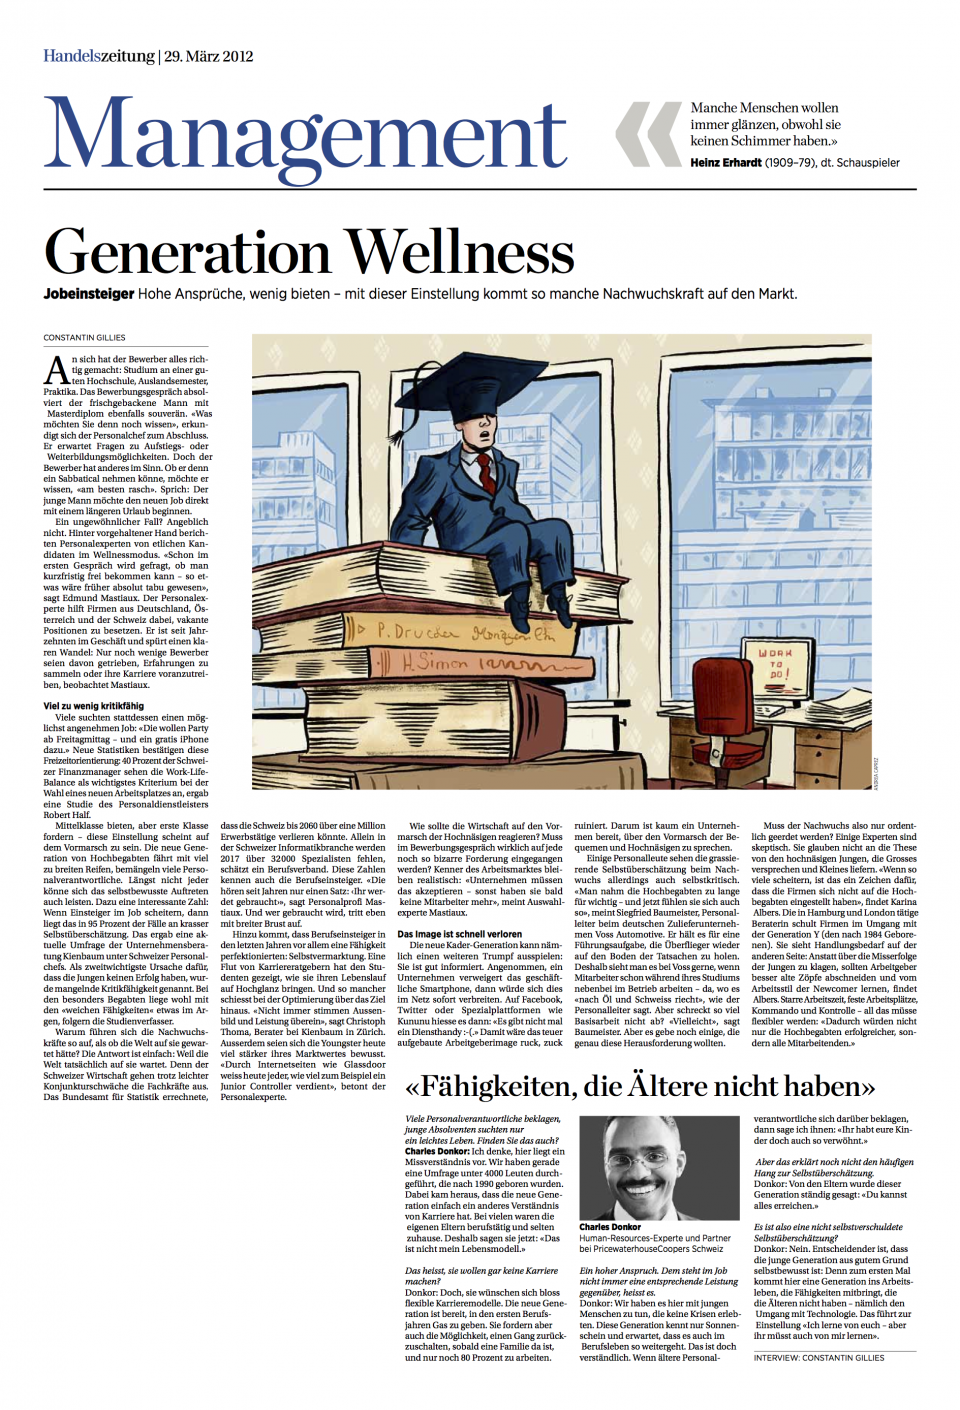 Generation Wellness - Handelszeitung März 2012